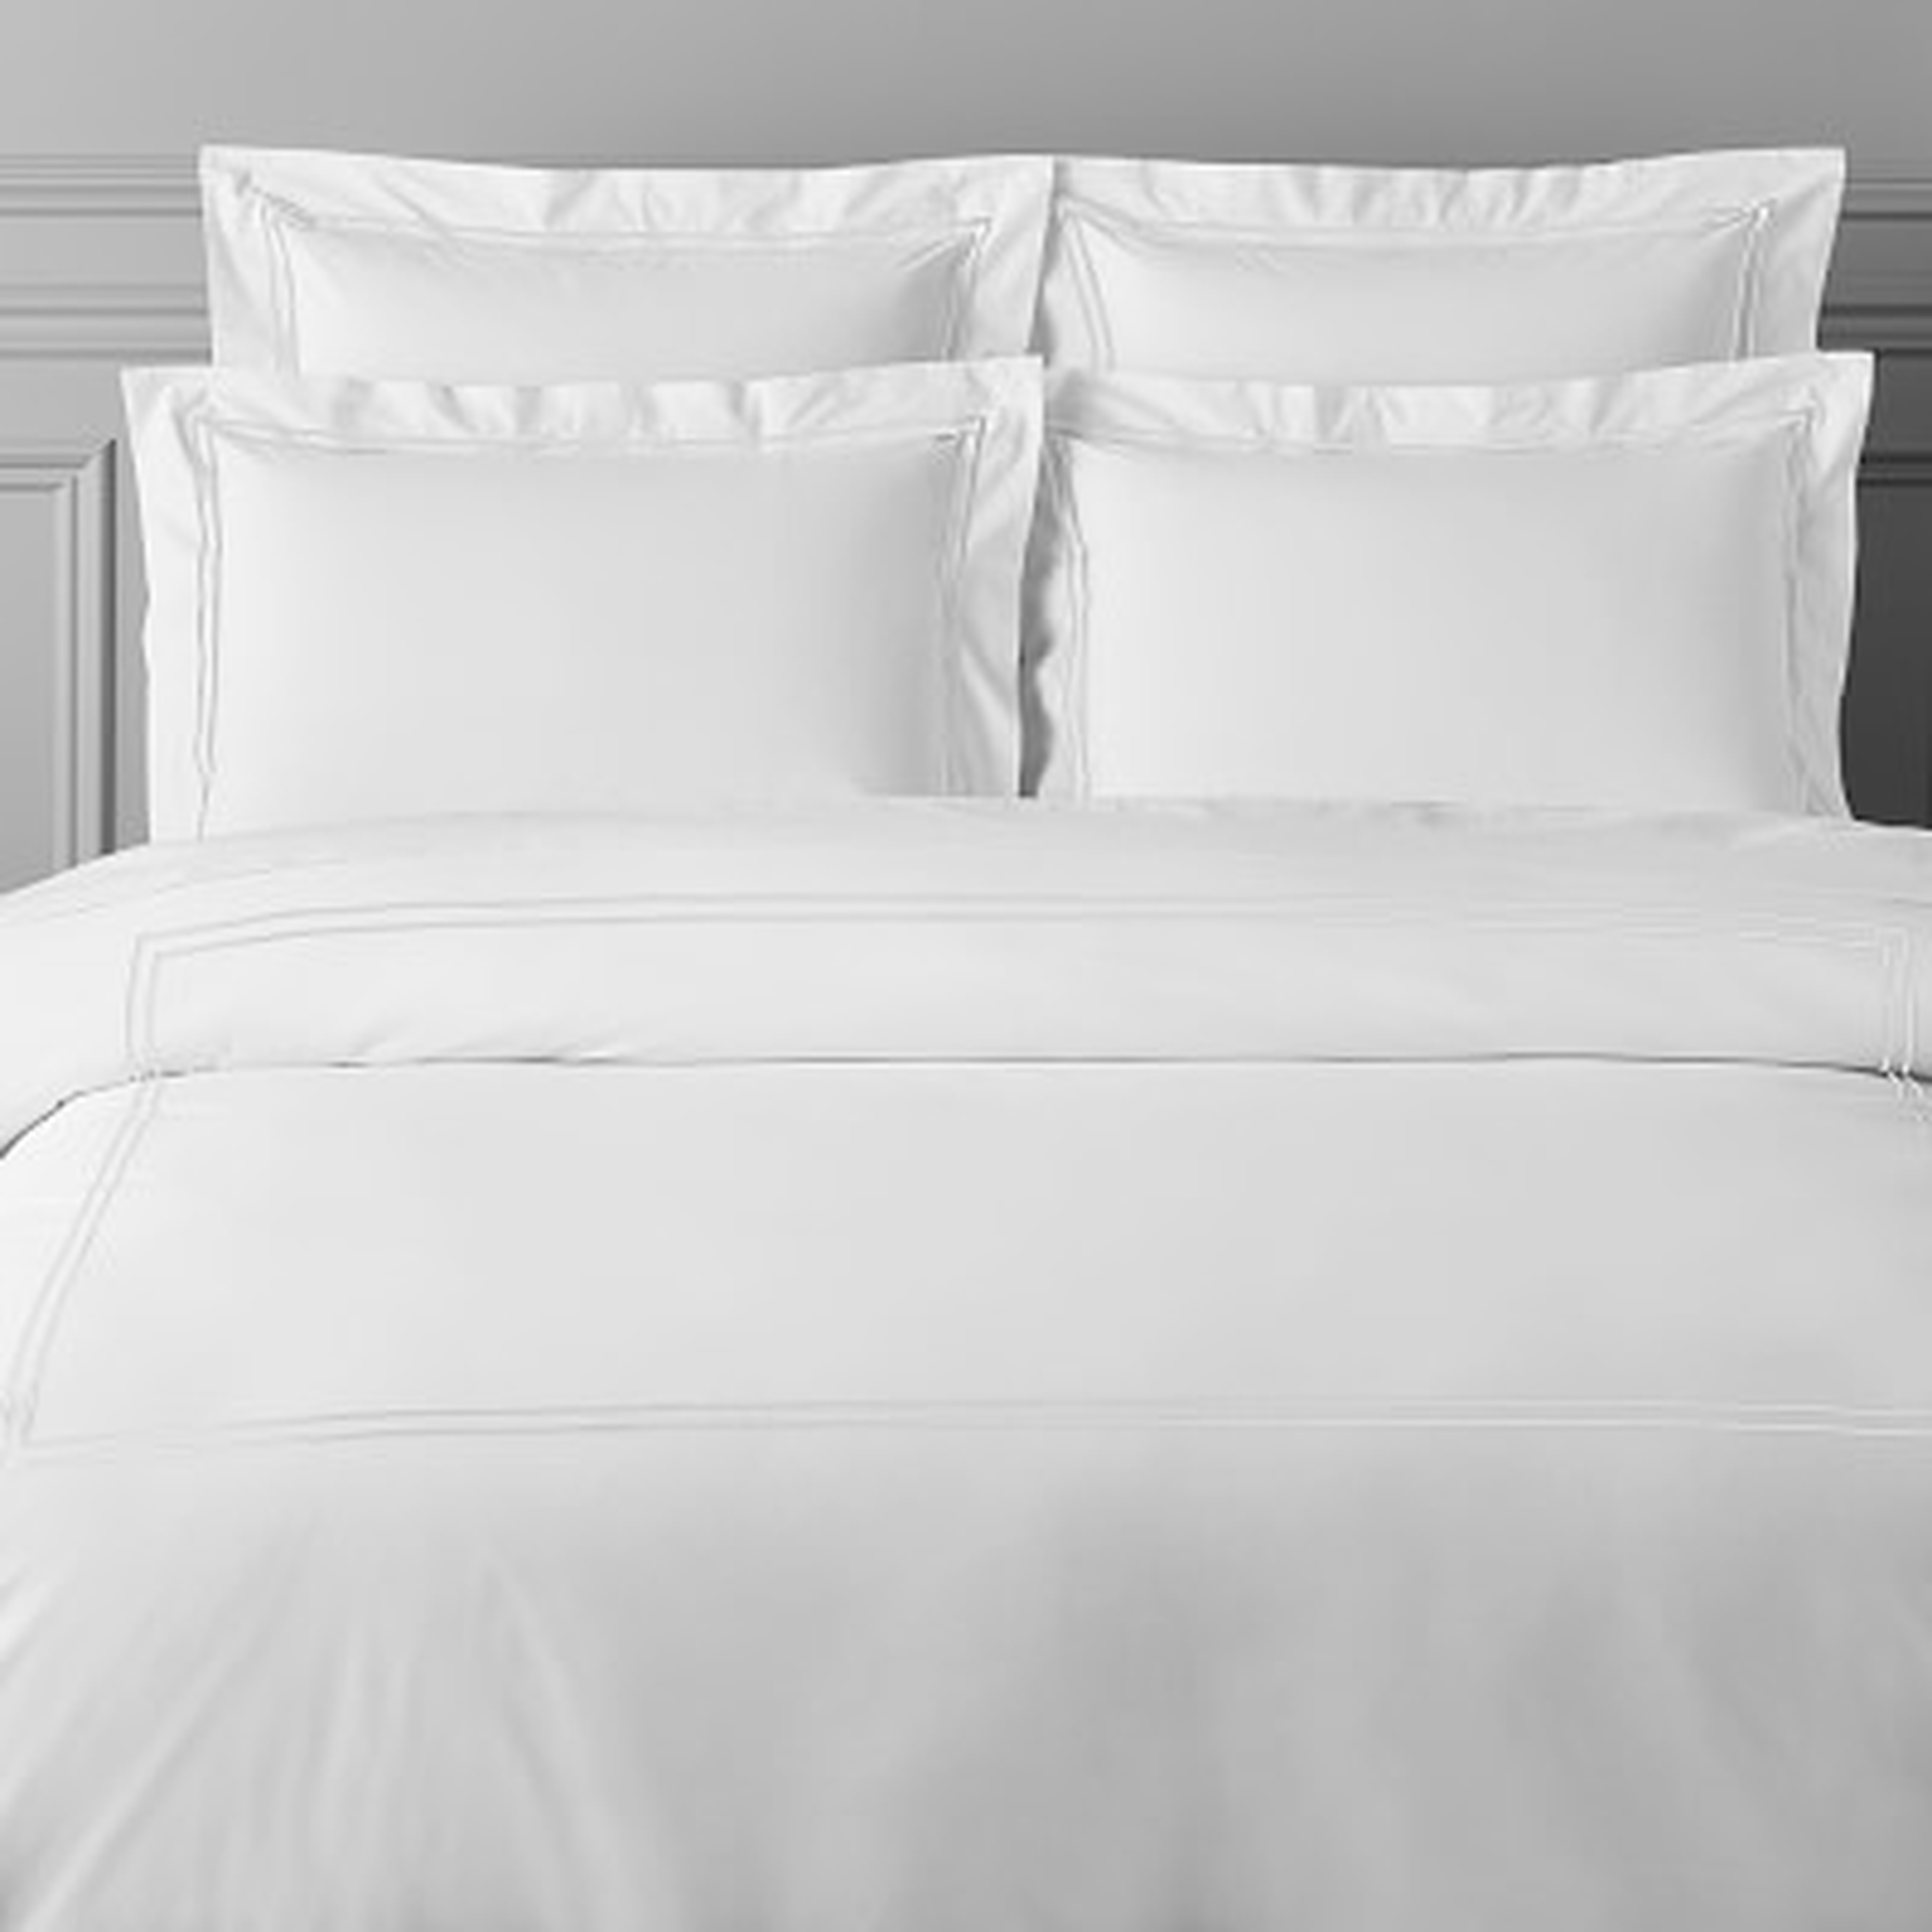 White Hotel Bedding, Duvet Cover, Full/Queen, White - Williams Sonoma